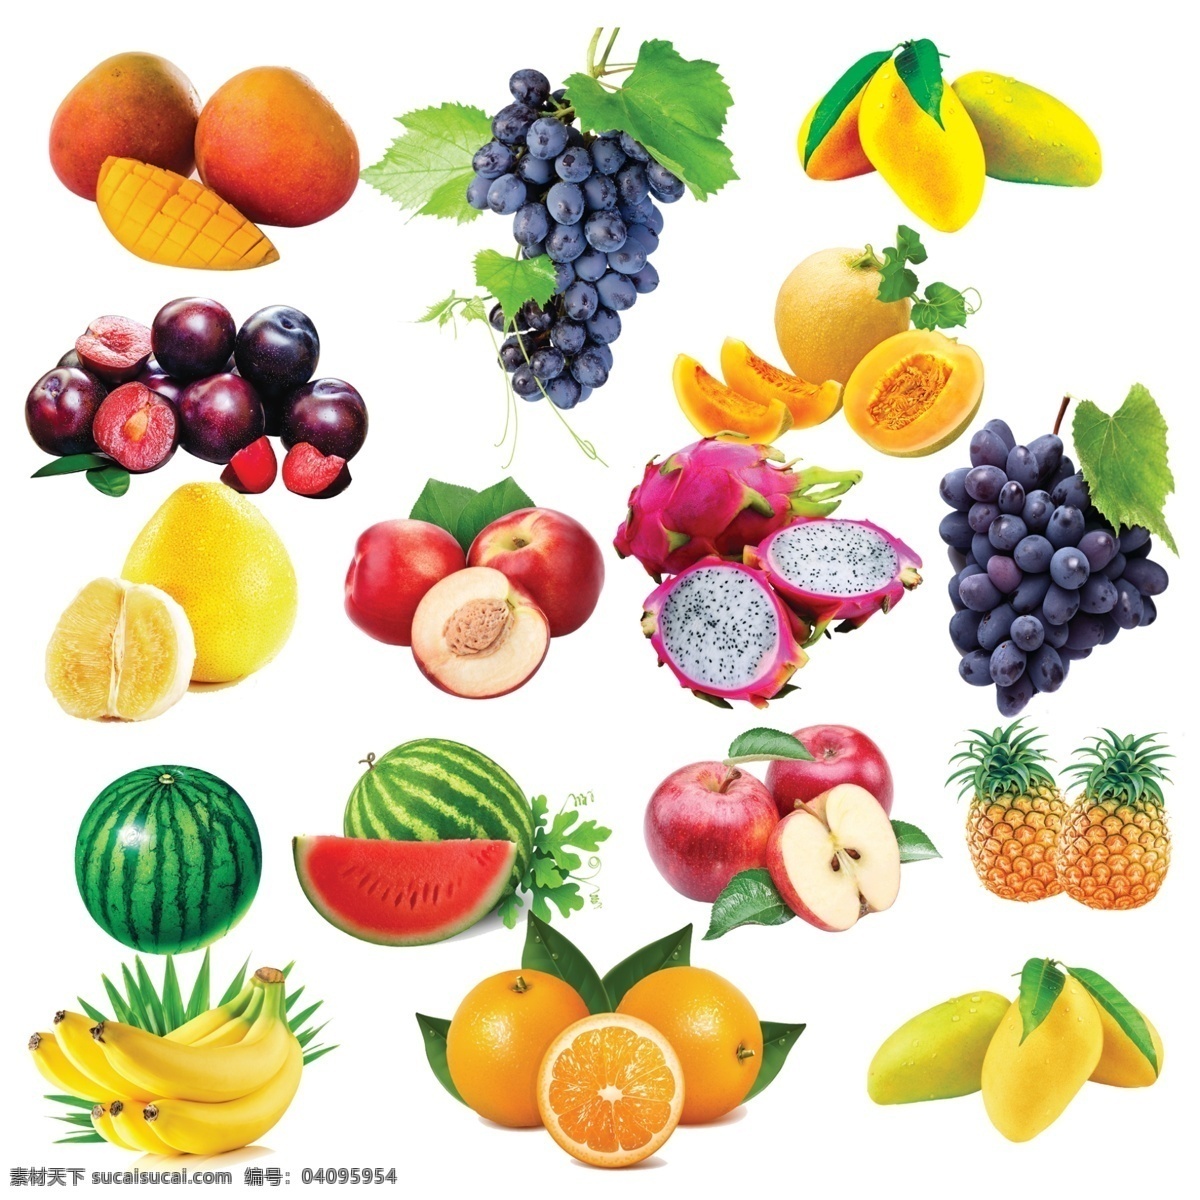 水果 水果大全 水果素材 新鲜水果大全 各种水果 葡萄 芒果 李子 哈密瓜 柚子 桃子 火龙果 西瓜 苹果 菠萝 香蕉 橙子 展板模板